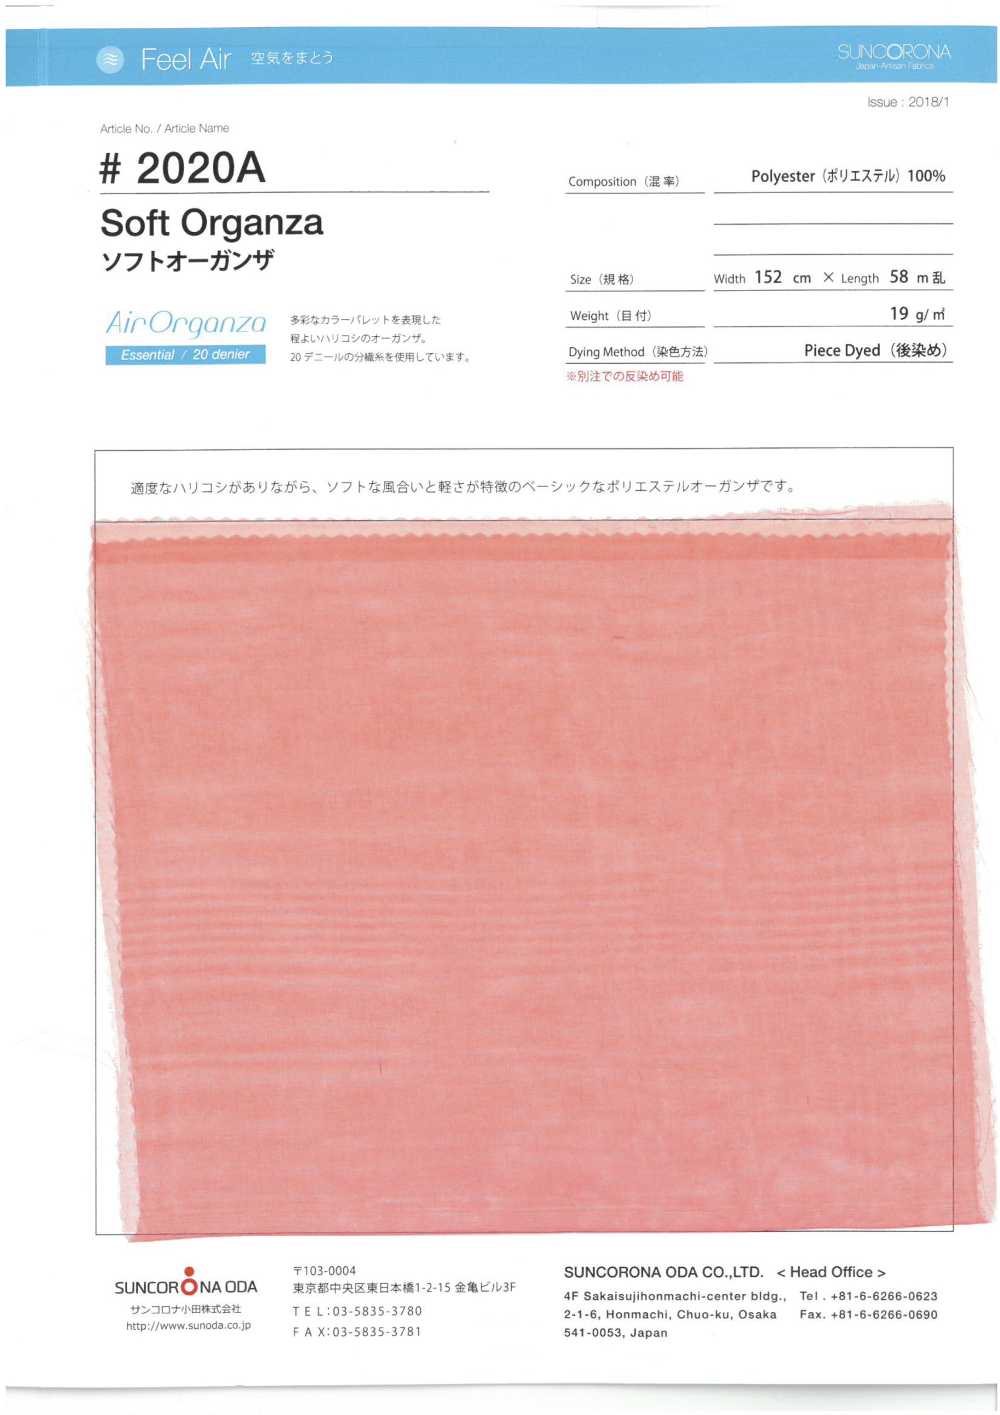 2020A Vải Organdy Polyester Mềm Mại Suncorona Oda